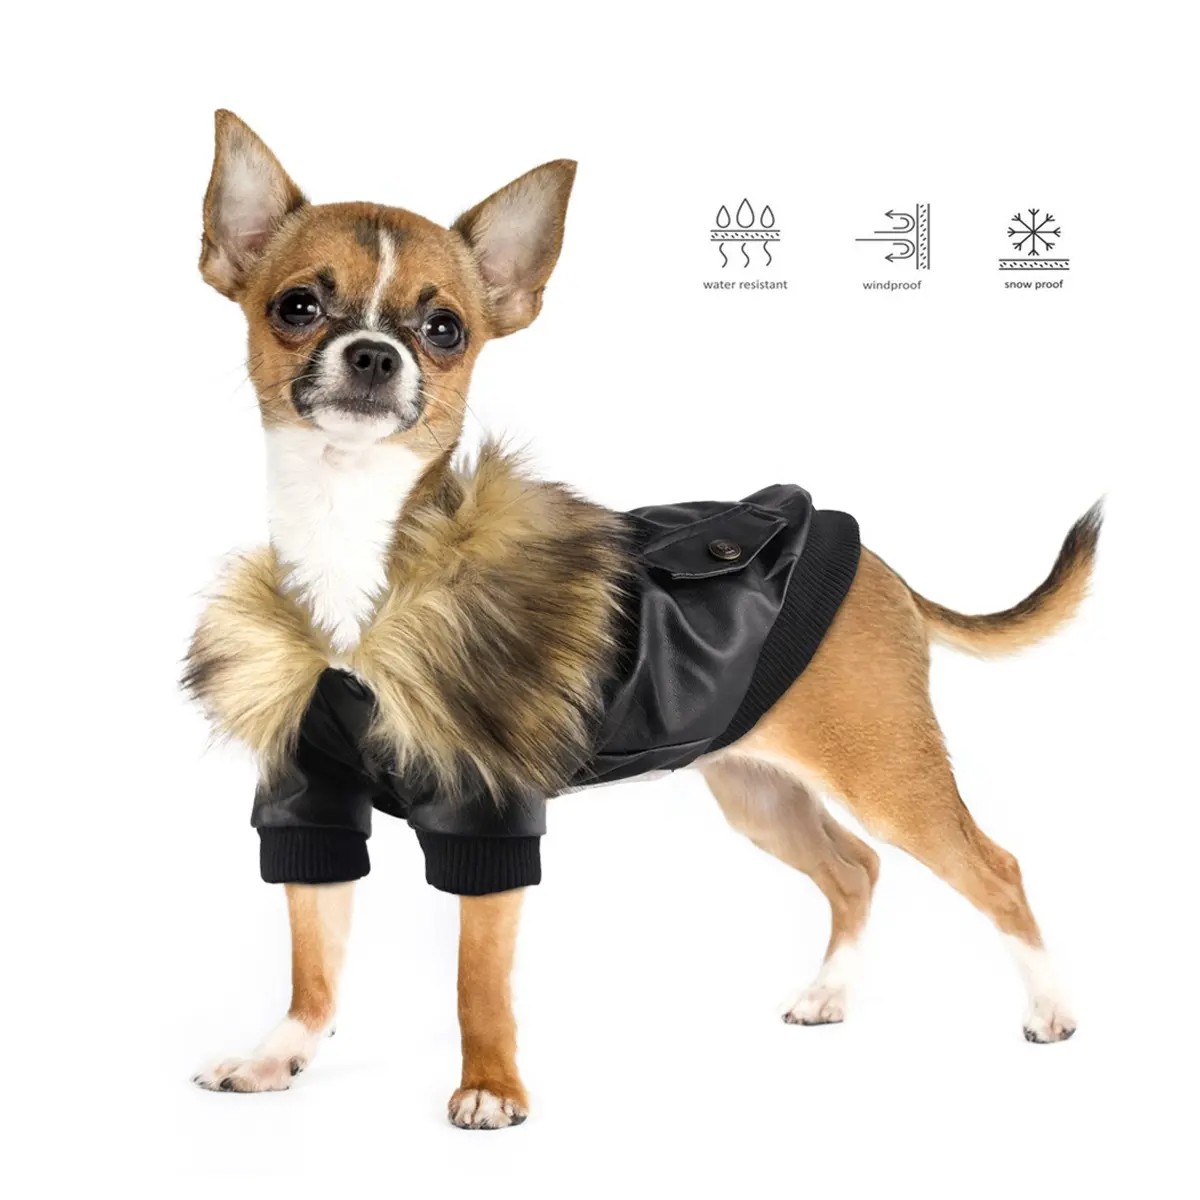 पालतू चमड़े के साथ जैकेट सर्दियों कुत्ते कपड़े फर कॉलर कुत्ता पिल्ला कोट छोटे पालतू परिधान